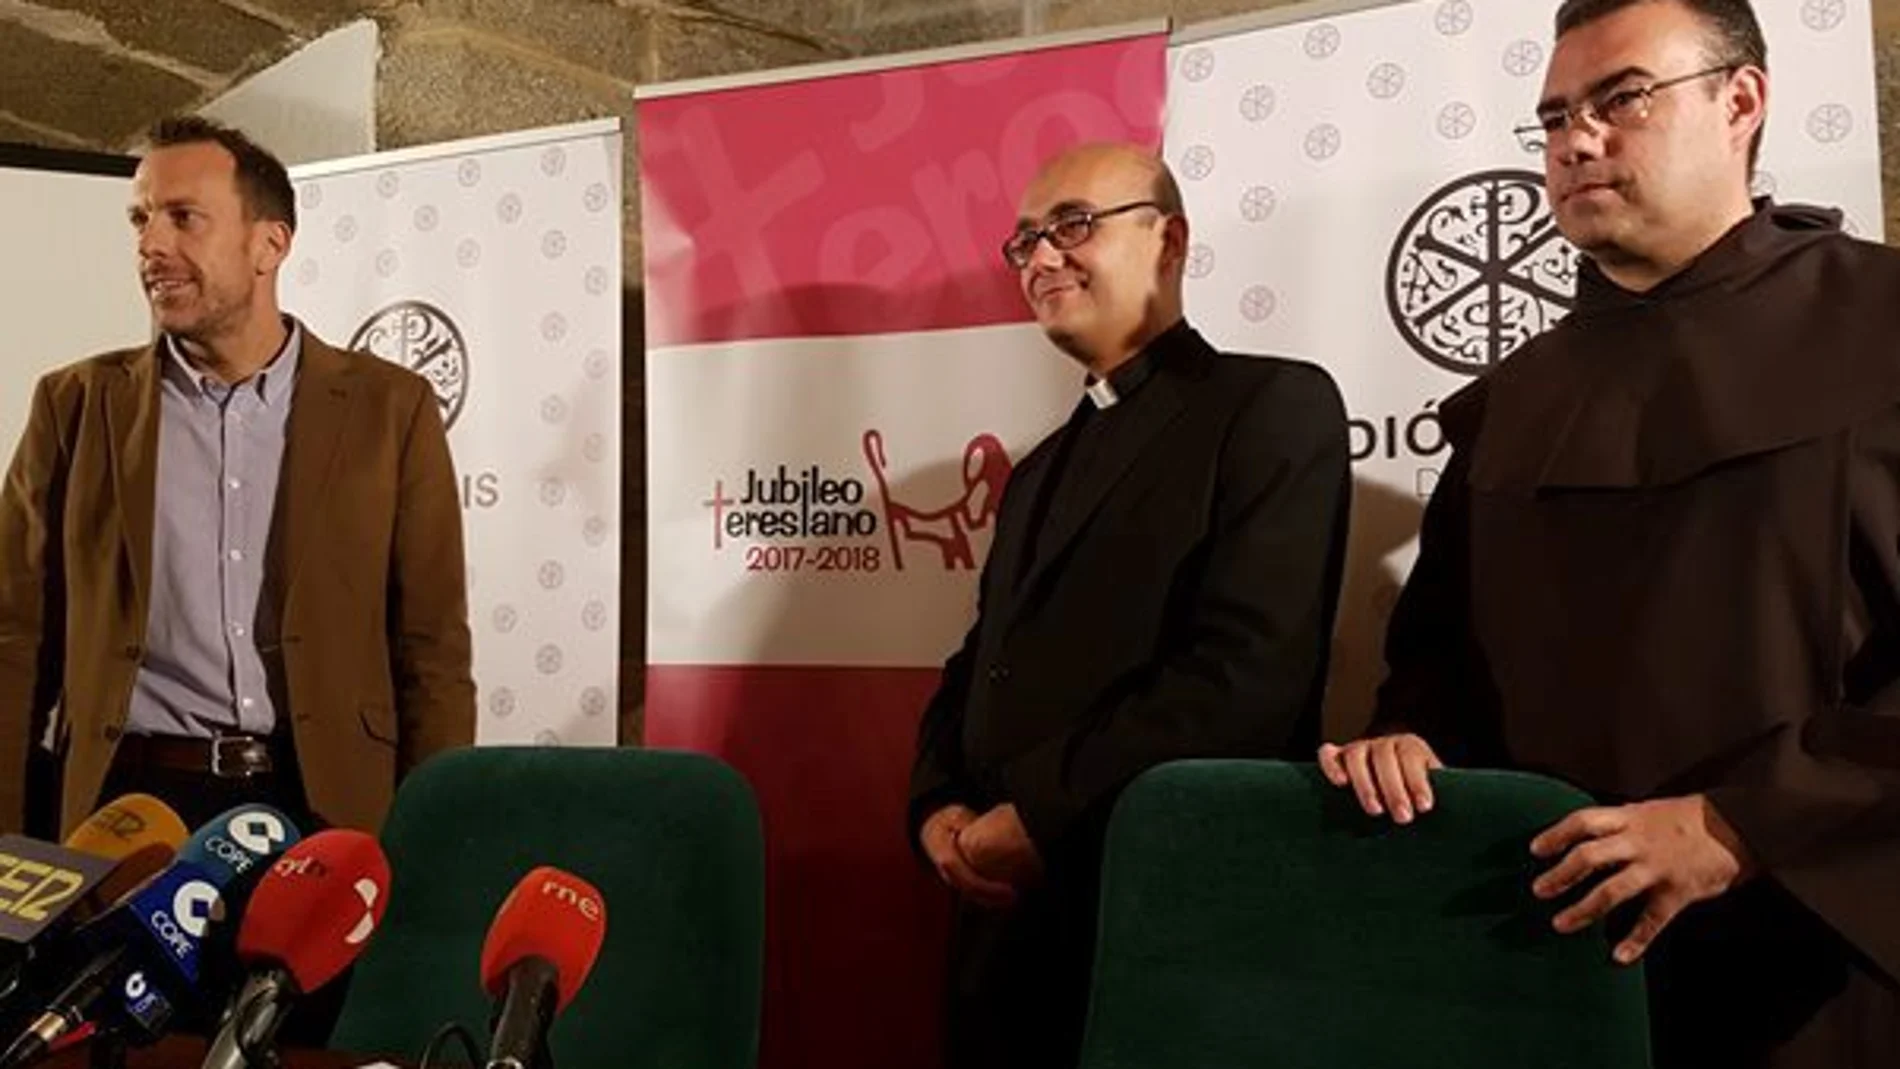 El delegado diocesano para el Año Teresiano, Jorge Zazo, presenta los actos del Año Teresiano junto a Héctor Palencia y David Jimenez